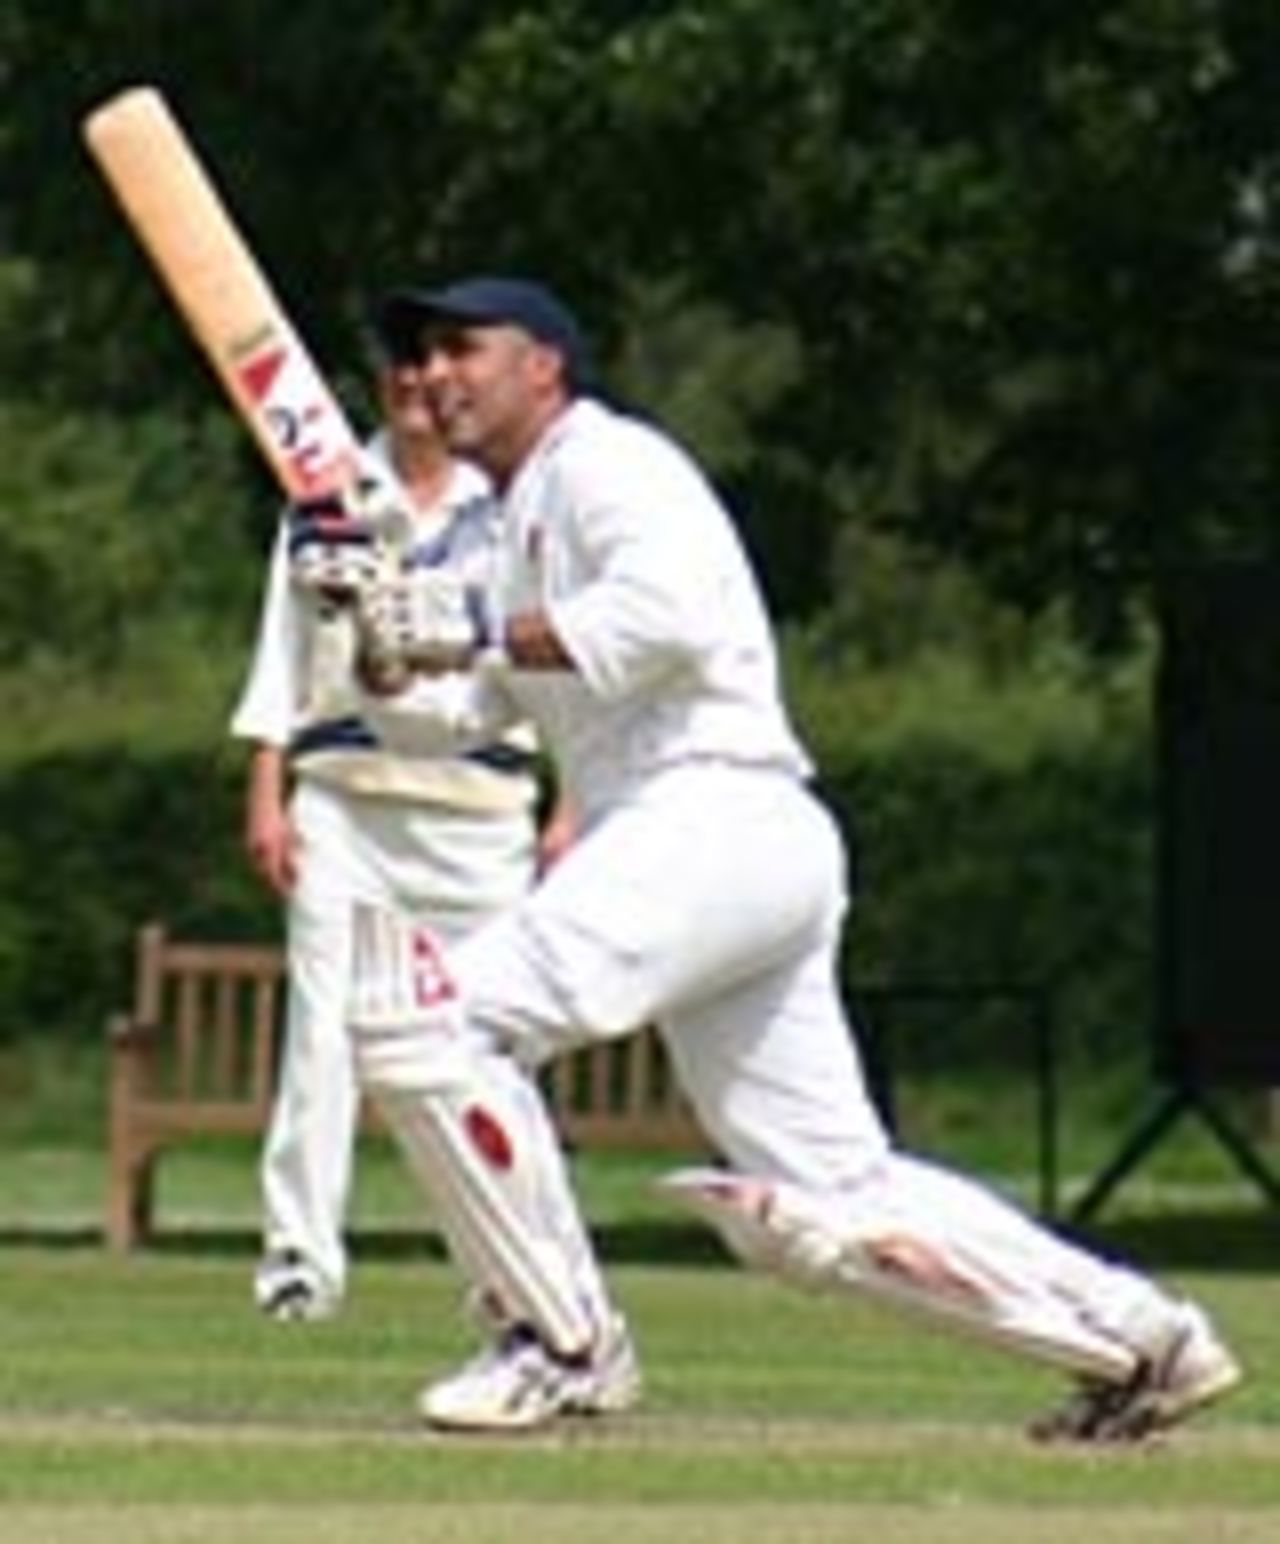 Abeed Janmohamed batting, Old Cranleighans v Old Suttonians, Cranleigh, July 18, 2004